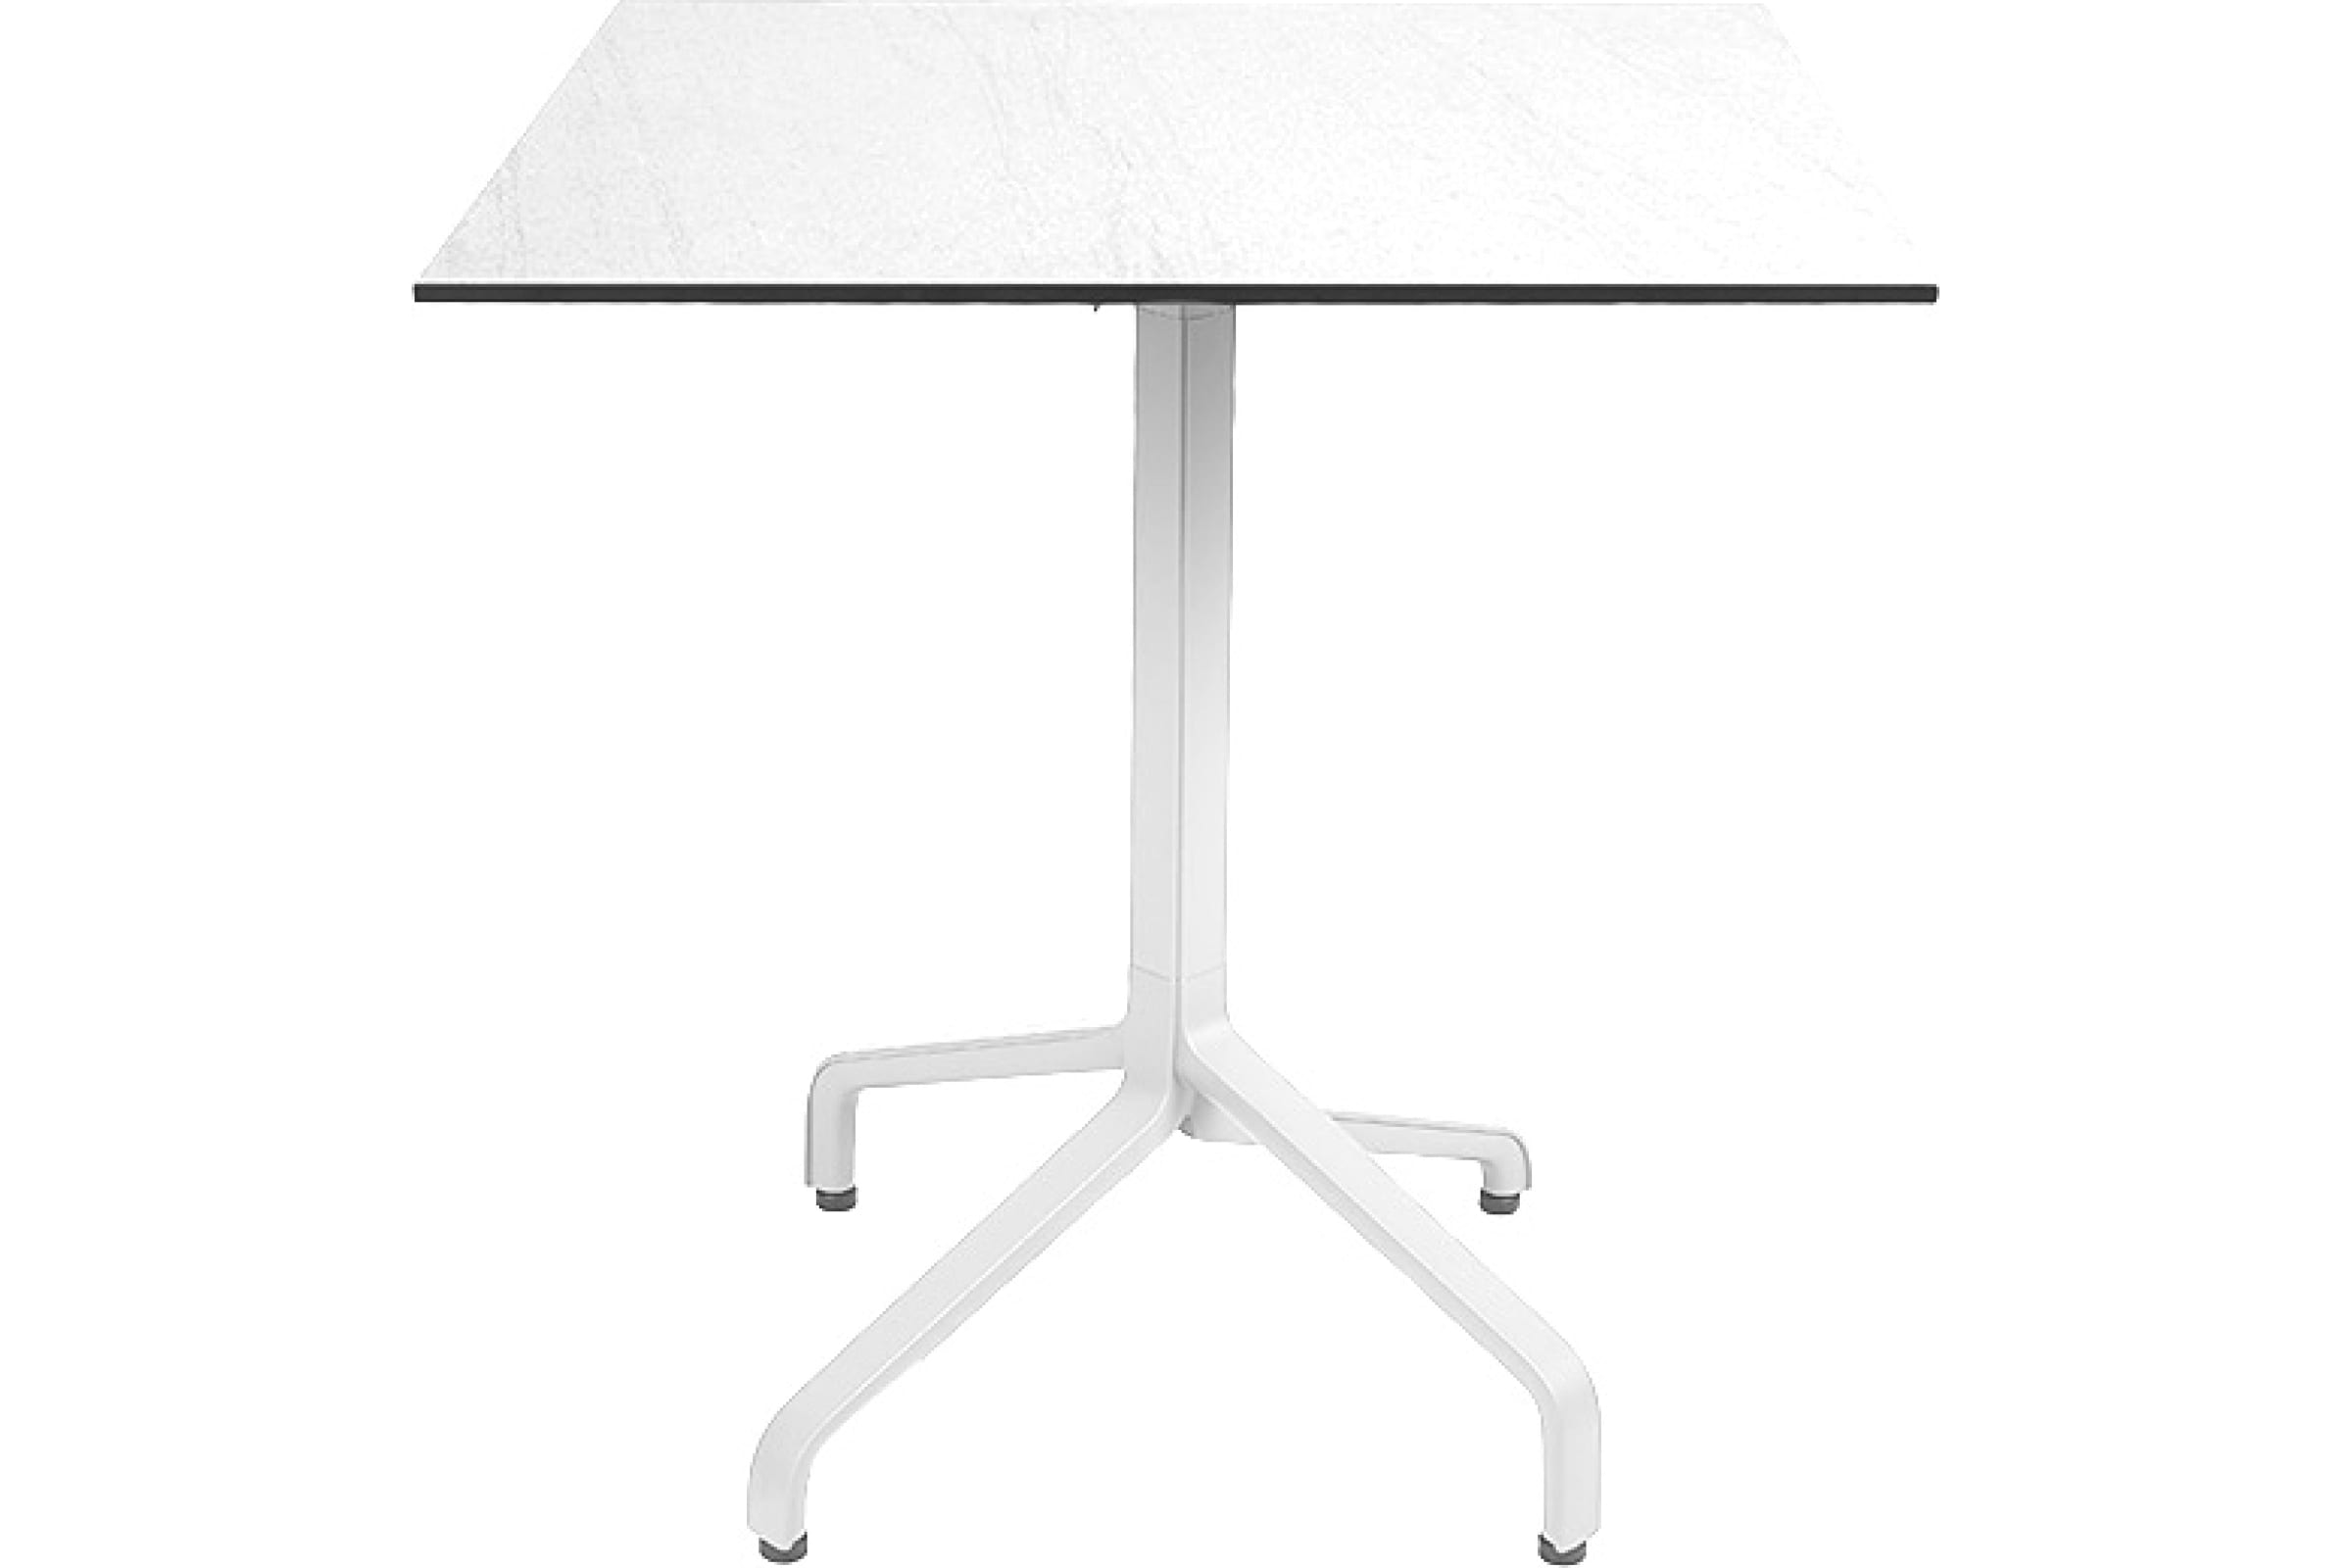 фото Nardi, италия стол складной квадратный frasca mini 70*70, белый база + столешница